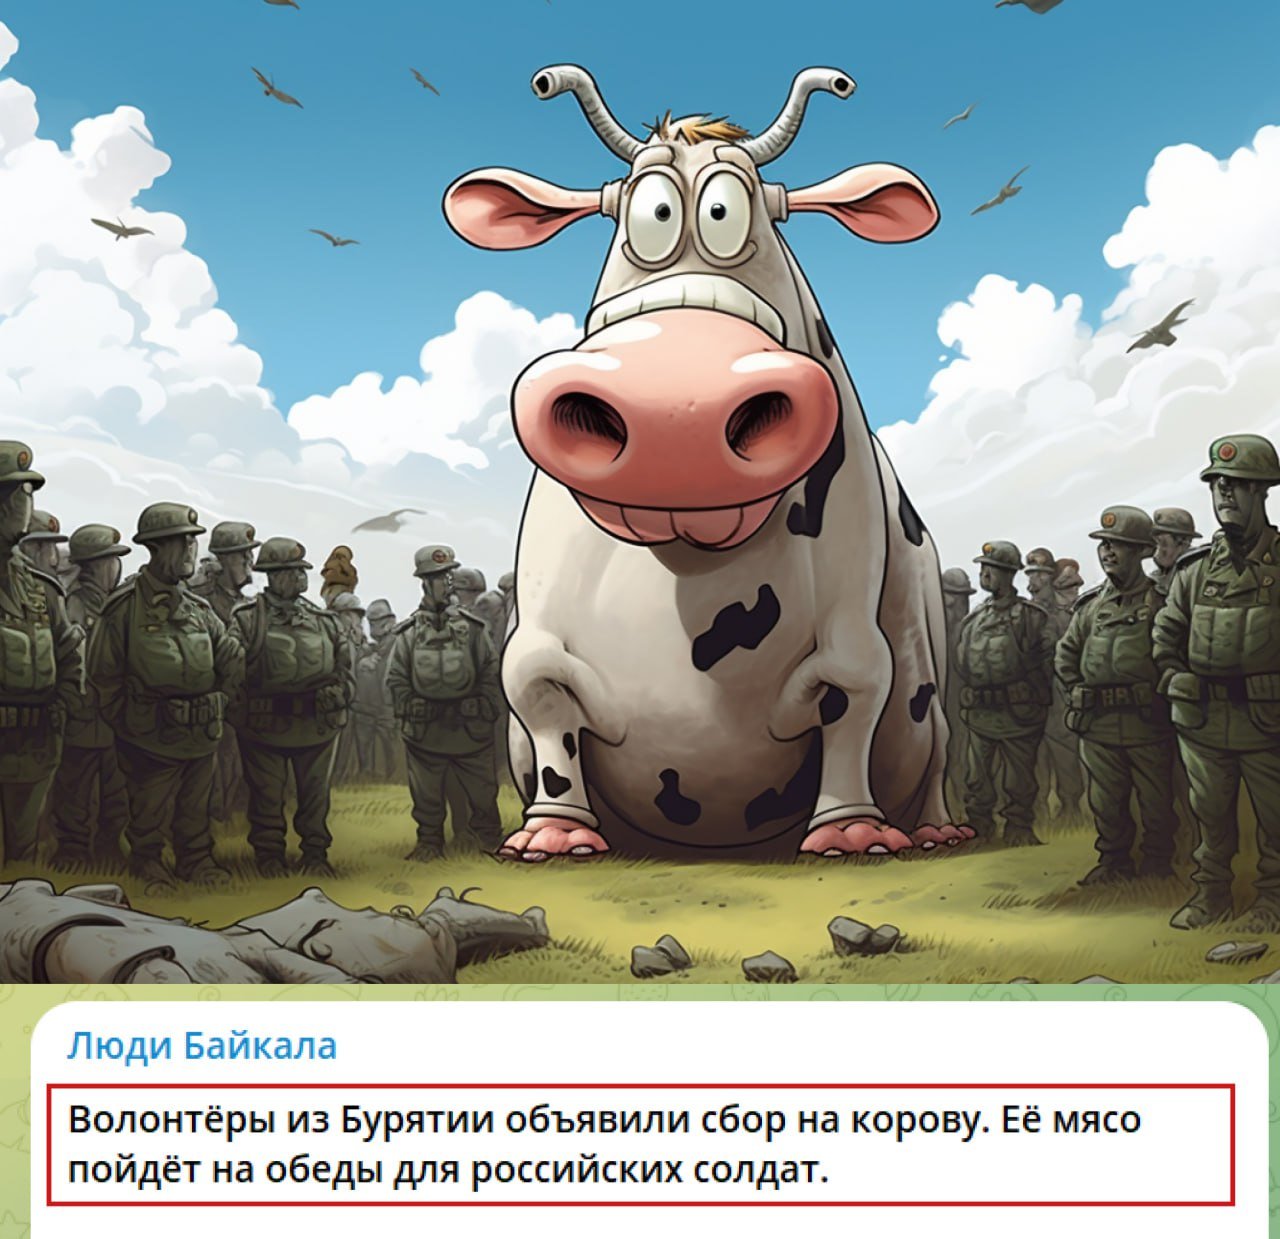  "Шойгу! Герасимов! Где коровы?": "волонтеры" из Бурятии открыли сбор для оккупантов в Крыму